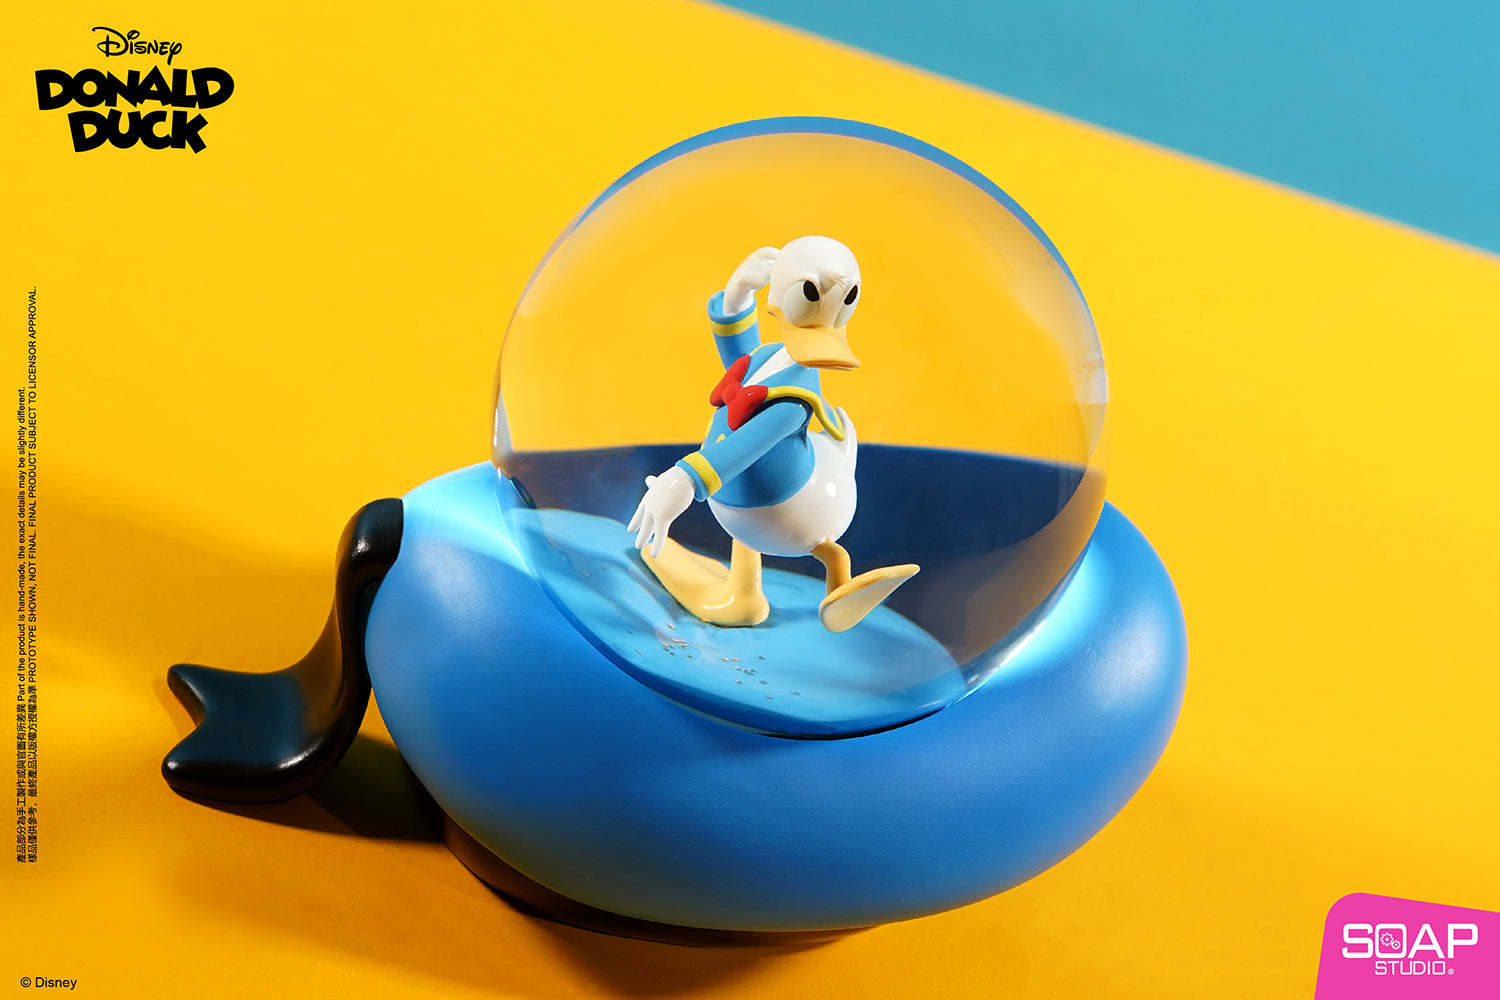 Soap Studio DY307 Donald Duck Magic Bubble Snow Globe